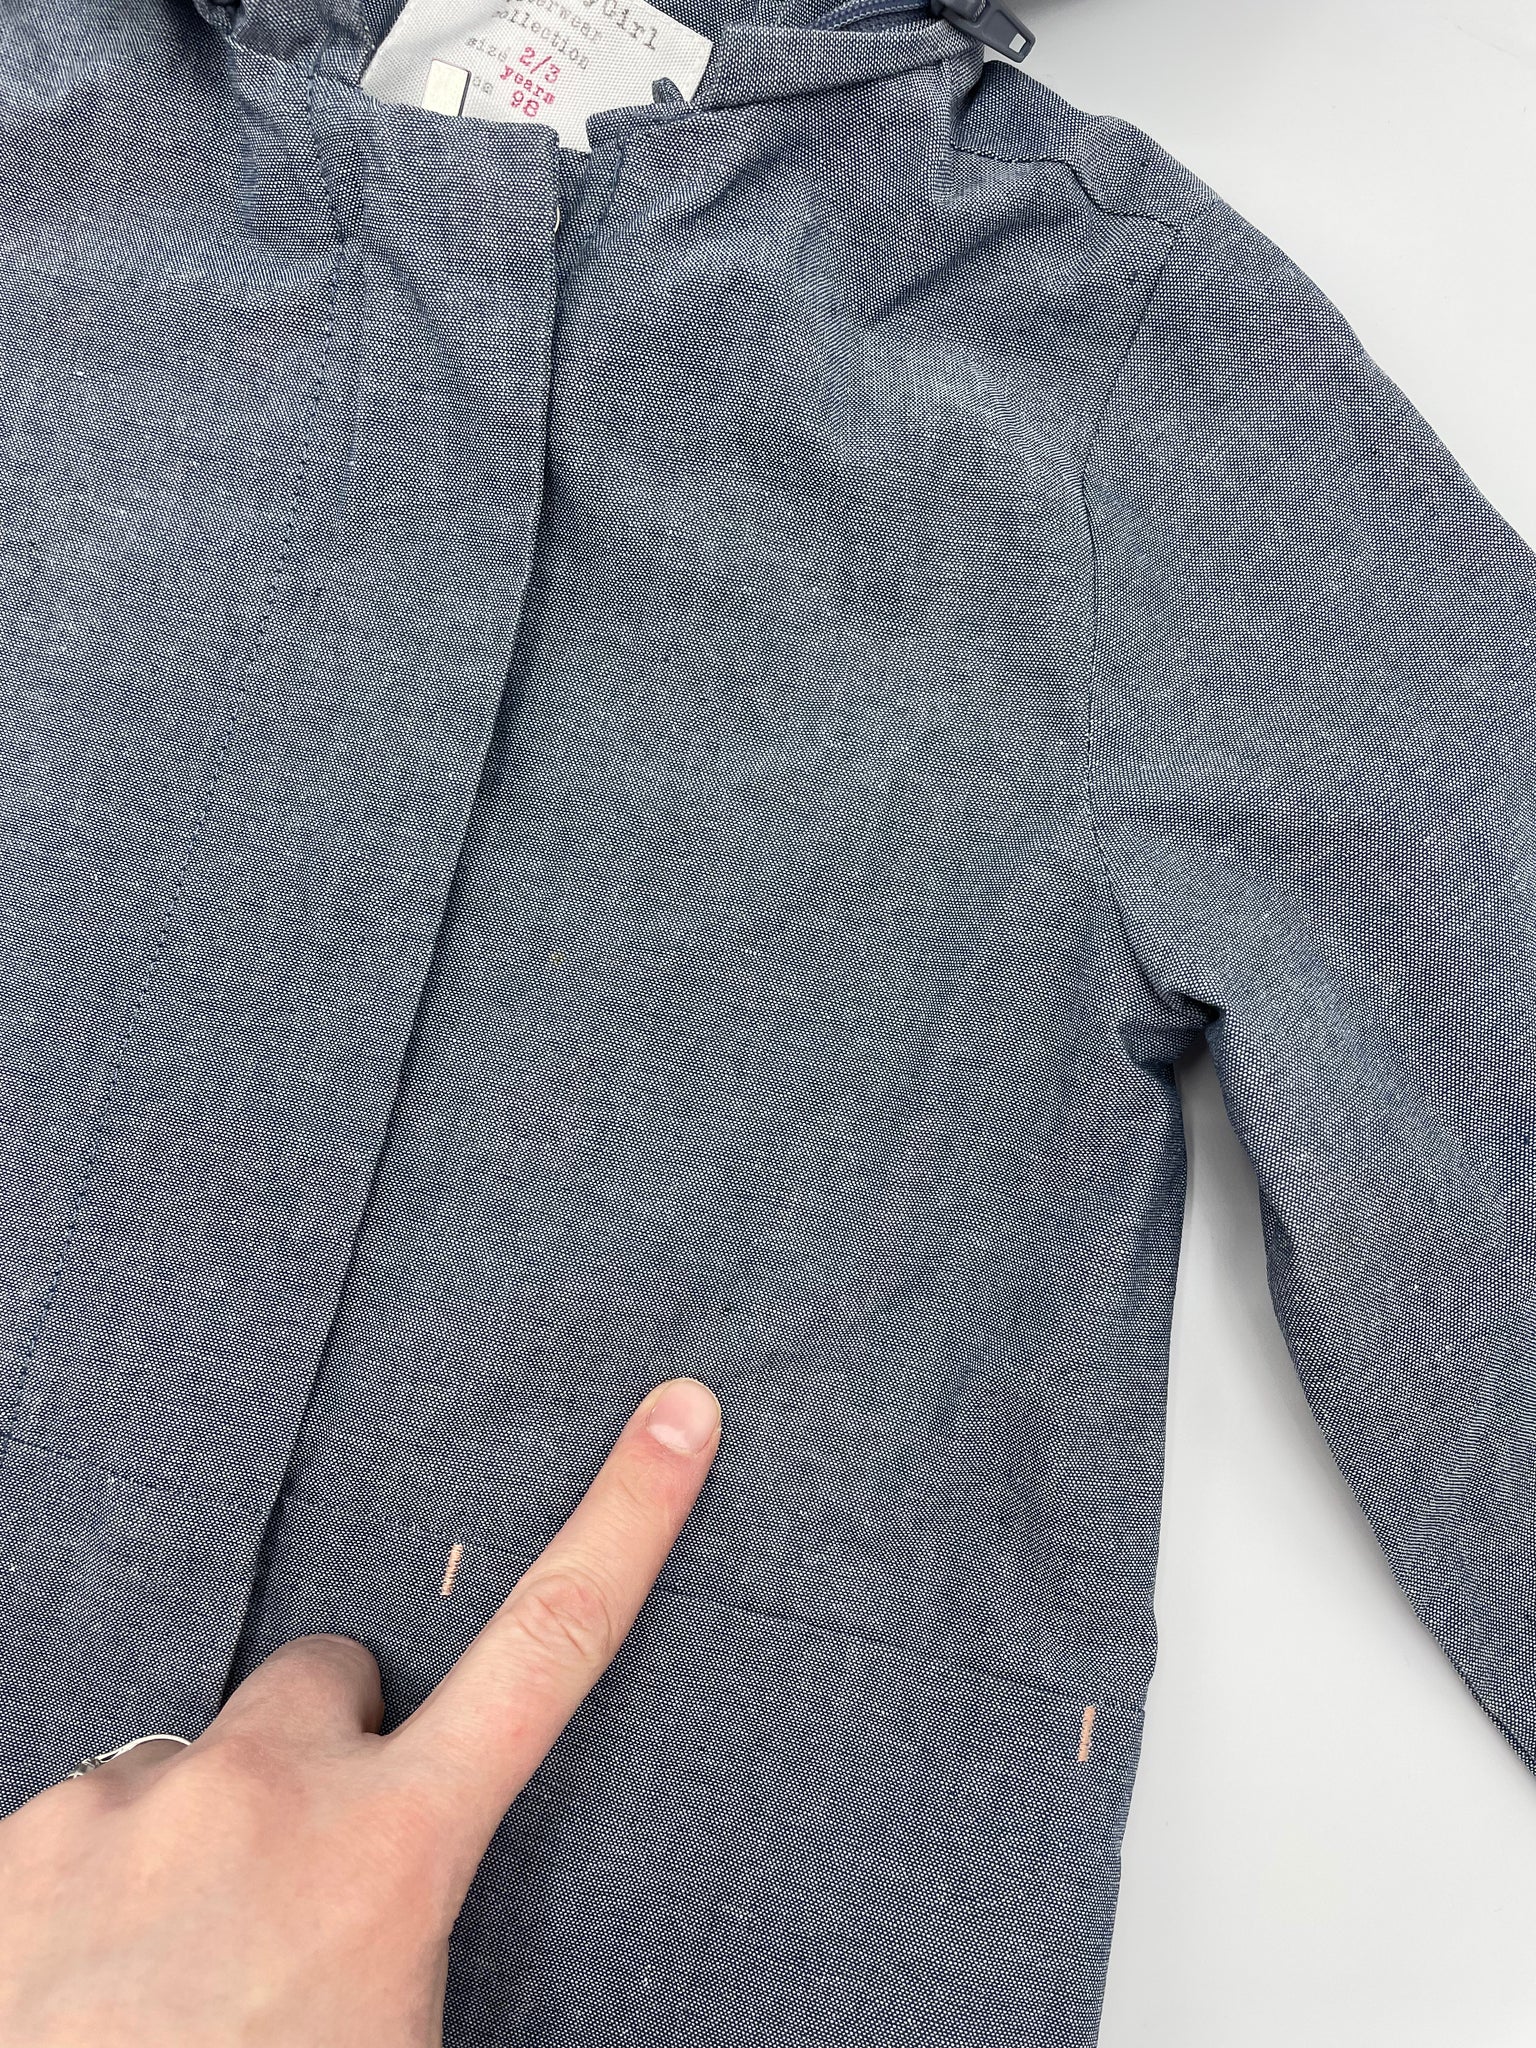 Manteau Zara 2-3 ans 98 cm (petit défaut)